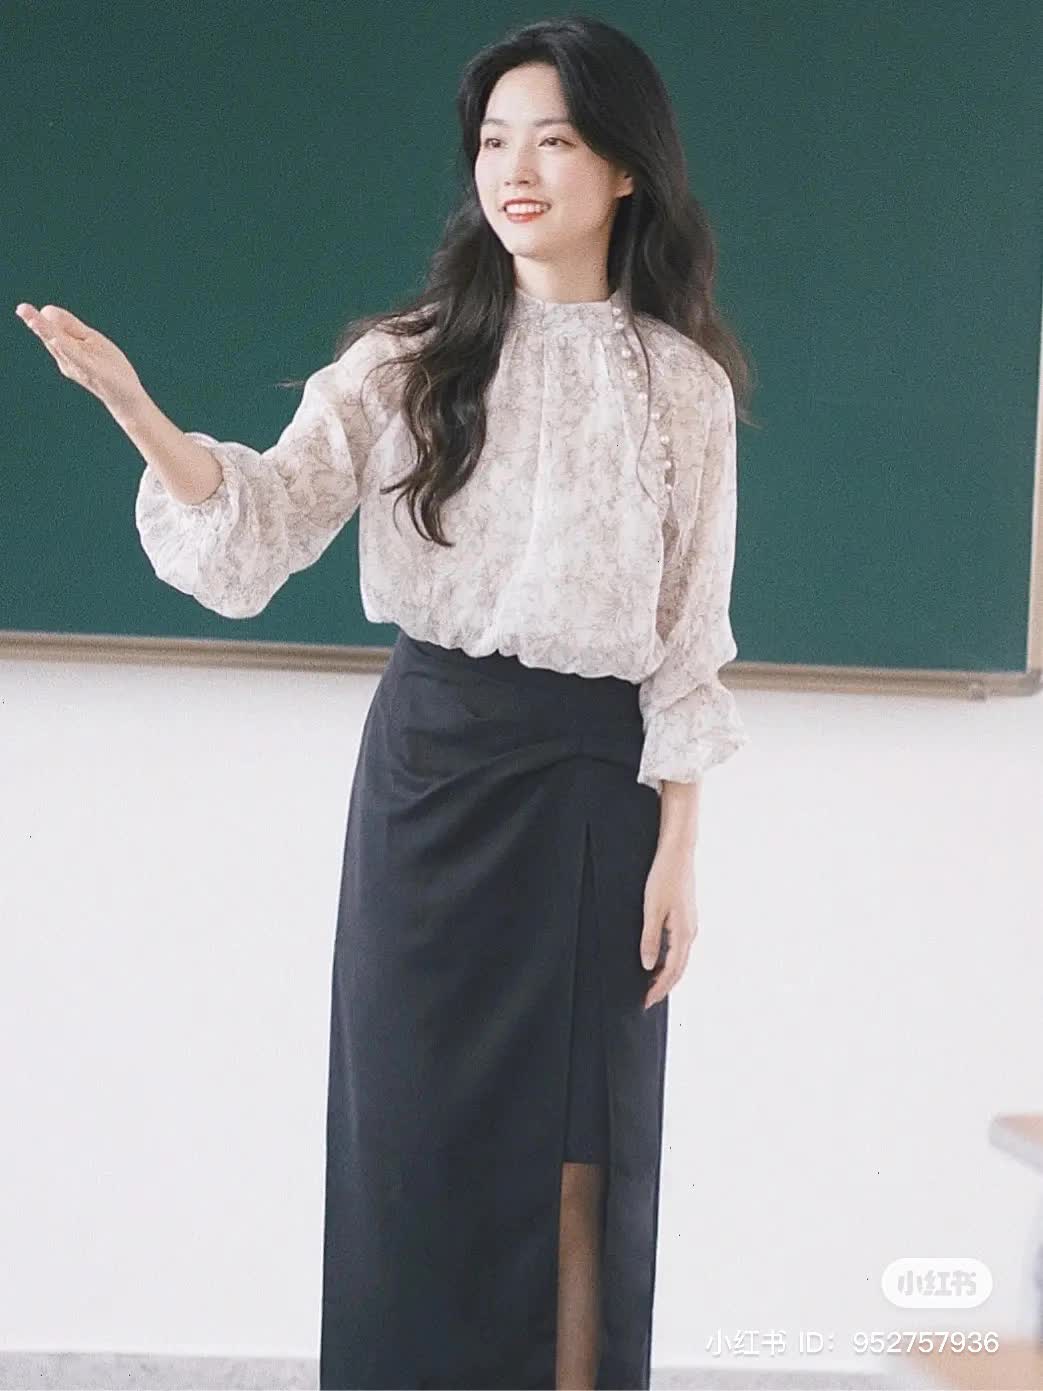 Cô giáo dạy Văn vừa xinh vừa mặc đẹp, đứng trên bục giảng thôi mà khí chất ngời ngời - Ảnh 6.